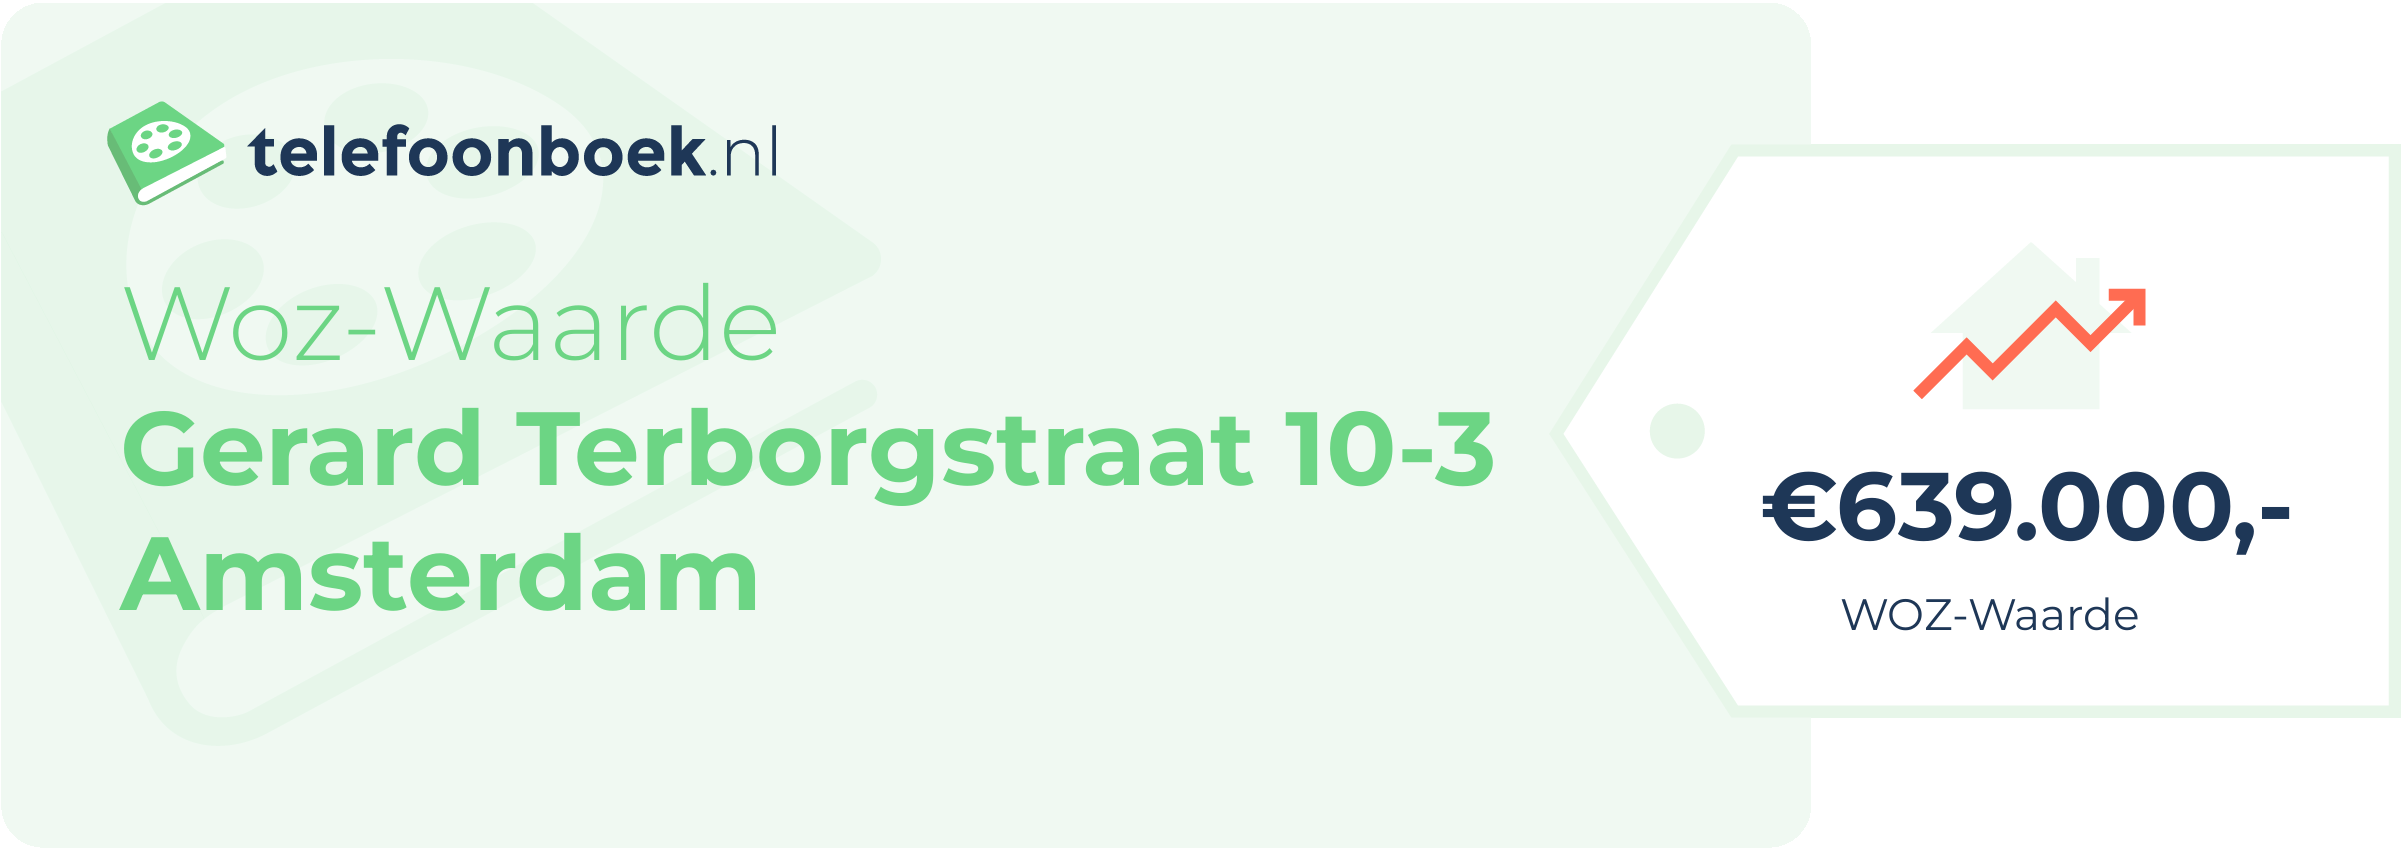 WOZ-waarde Gerard Terborgstraat 10-3 Amsterdam